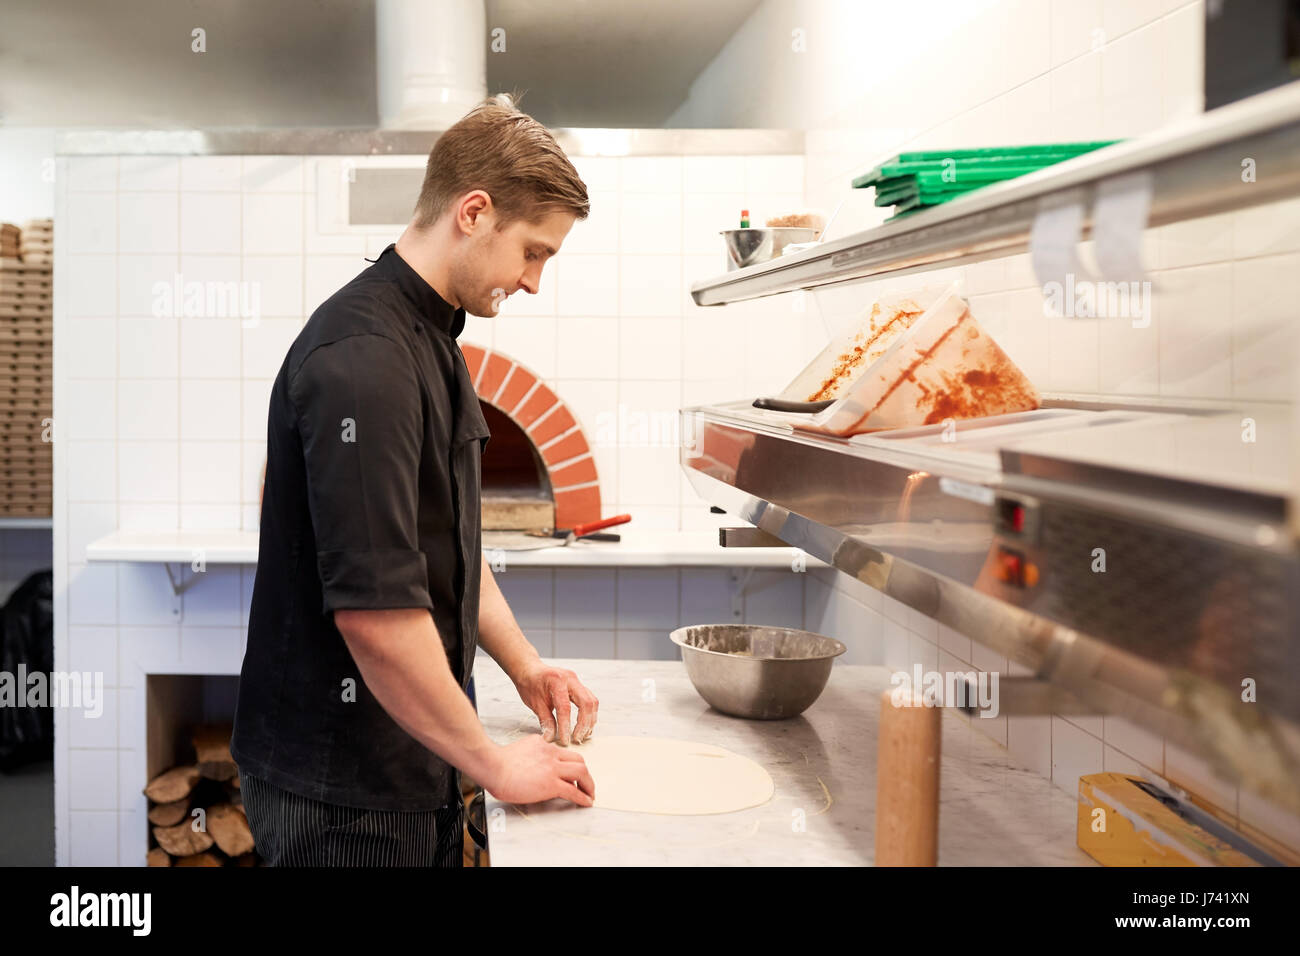 chef preparing pizza dough in kitchen at pizzeria Stock Photo